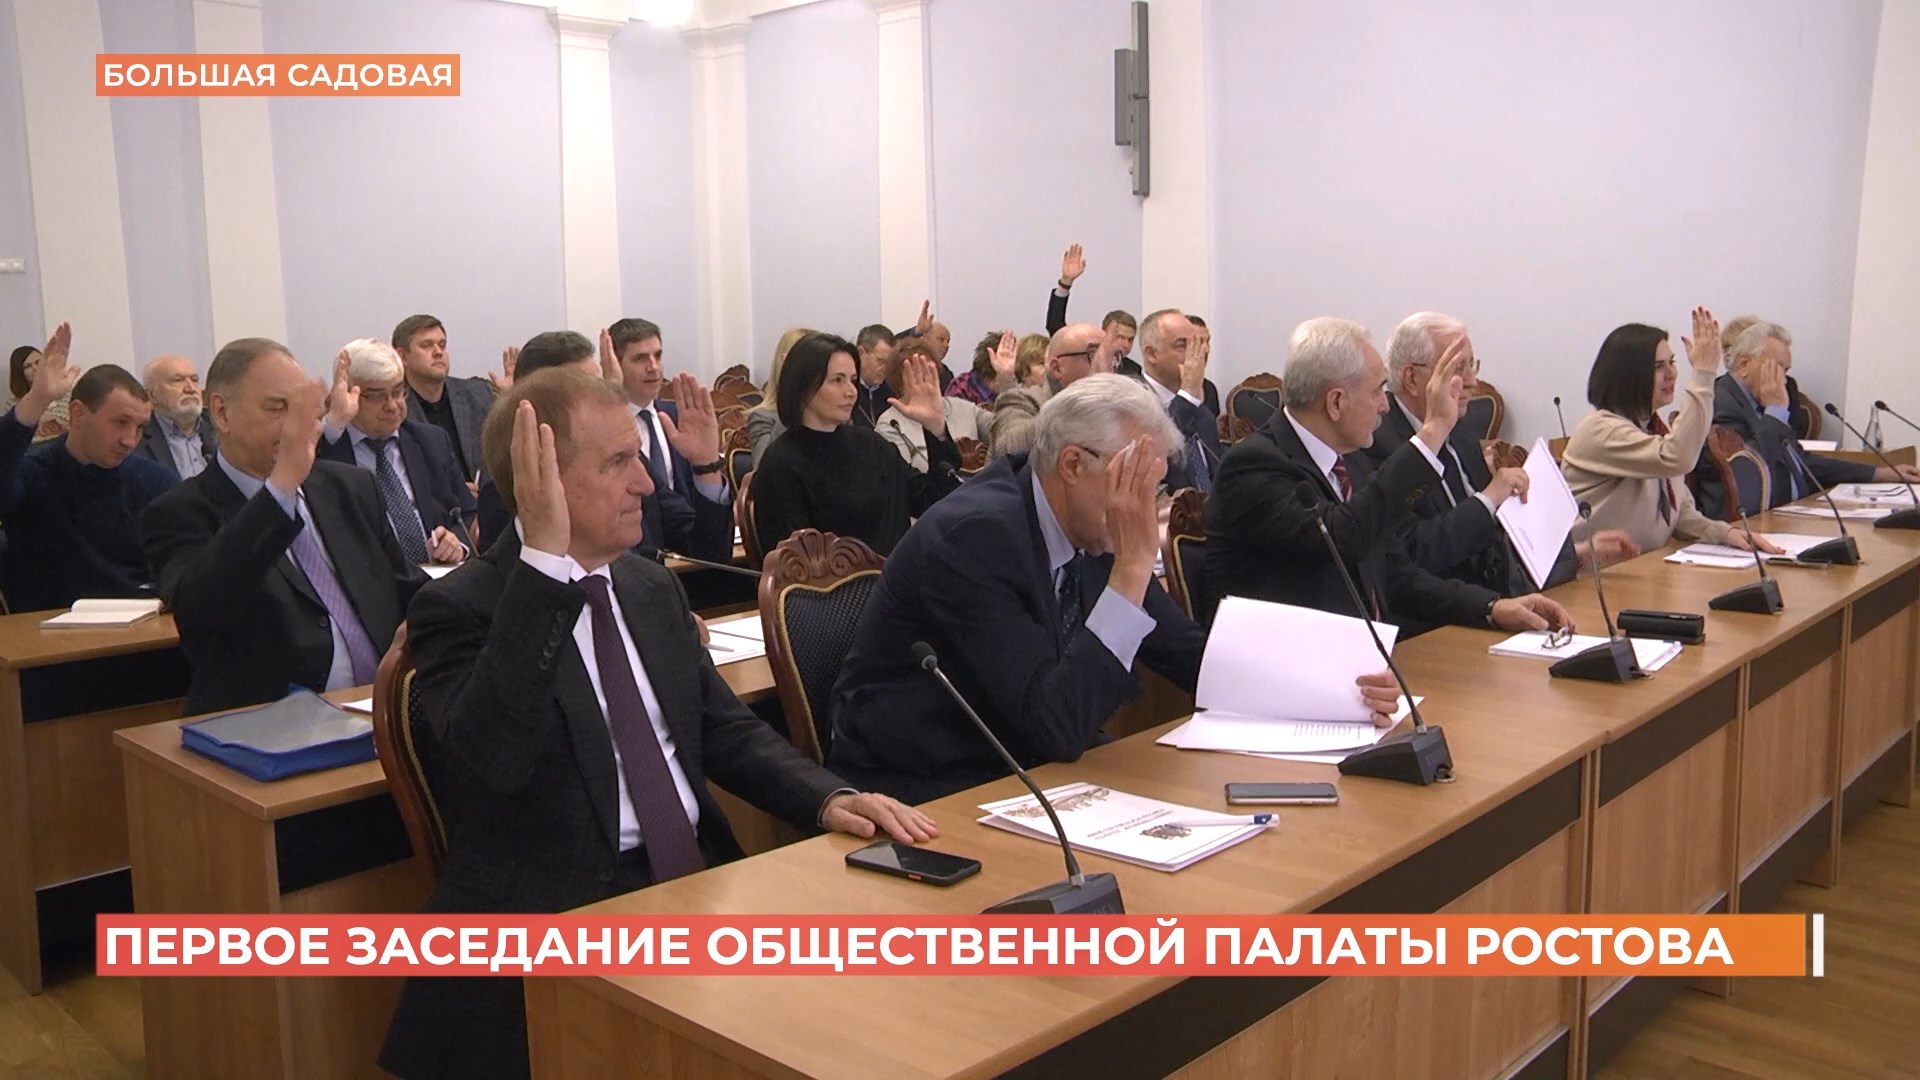 Общественную палату третьего созыва сформировали в Ростове